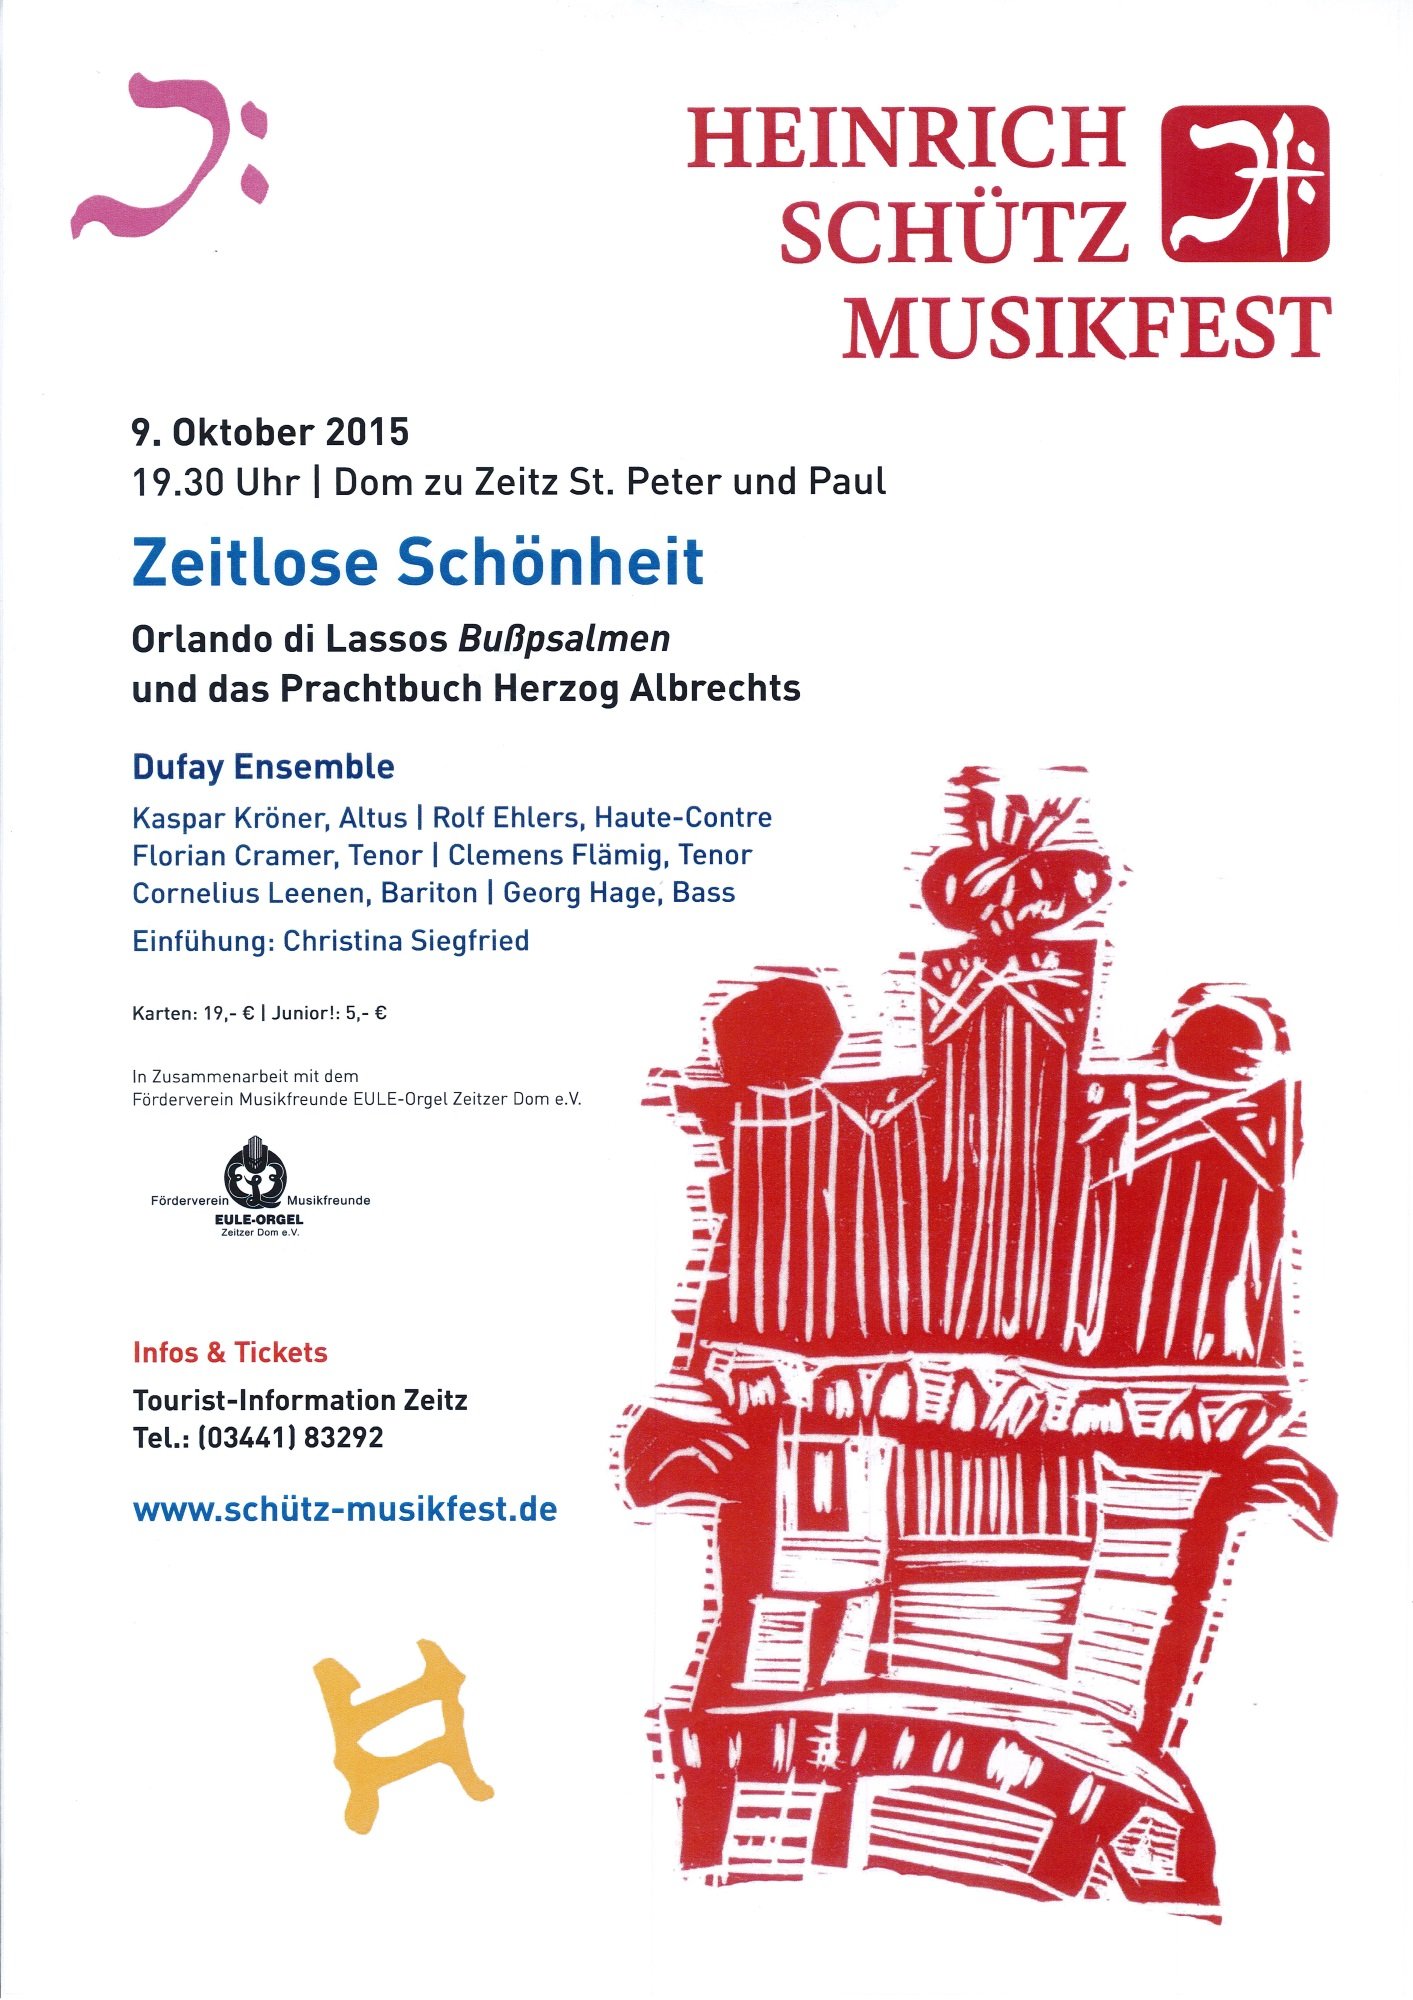 Plakat "Zeitlose Schönheit. Heinrich Schütz Musikfest" (Museum Schloss Moritzburg Zeitz RR-R)